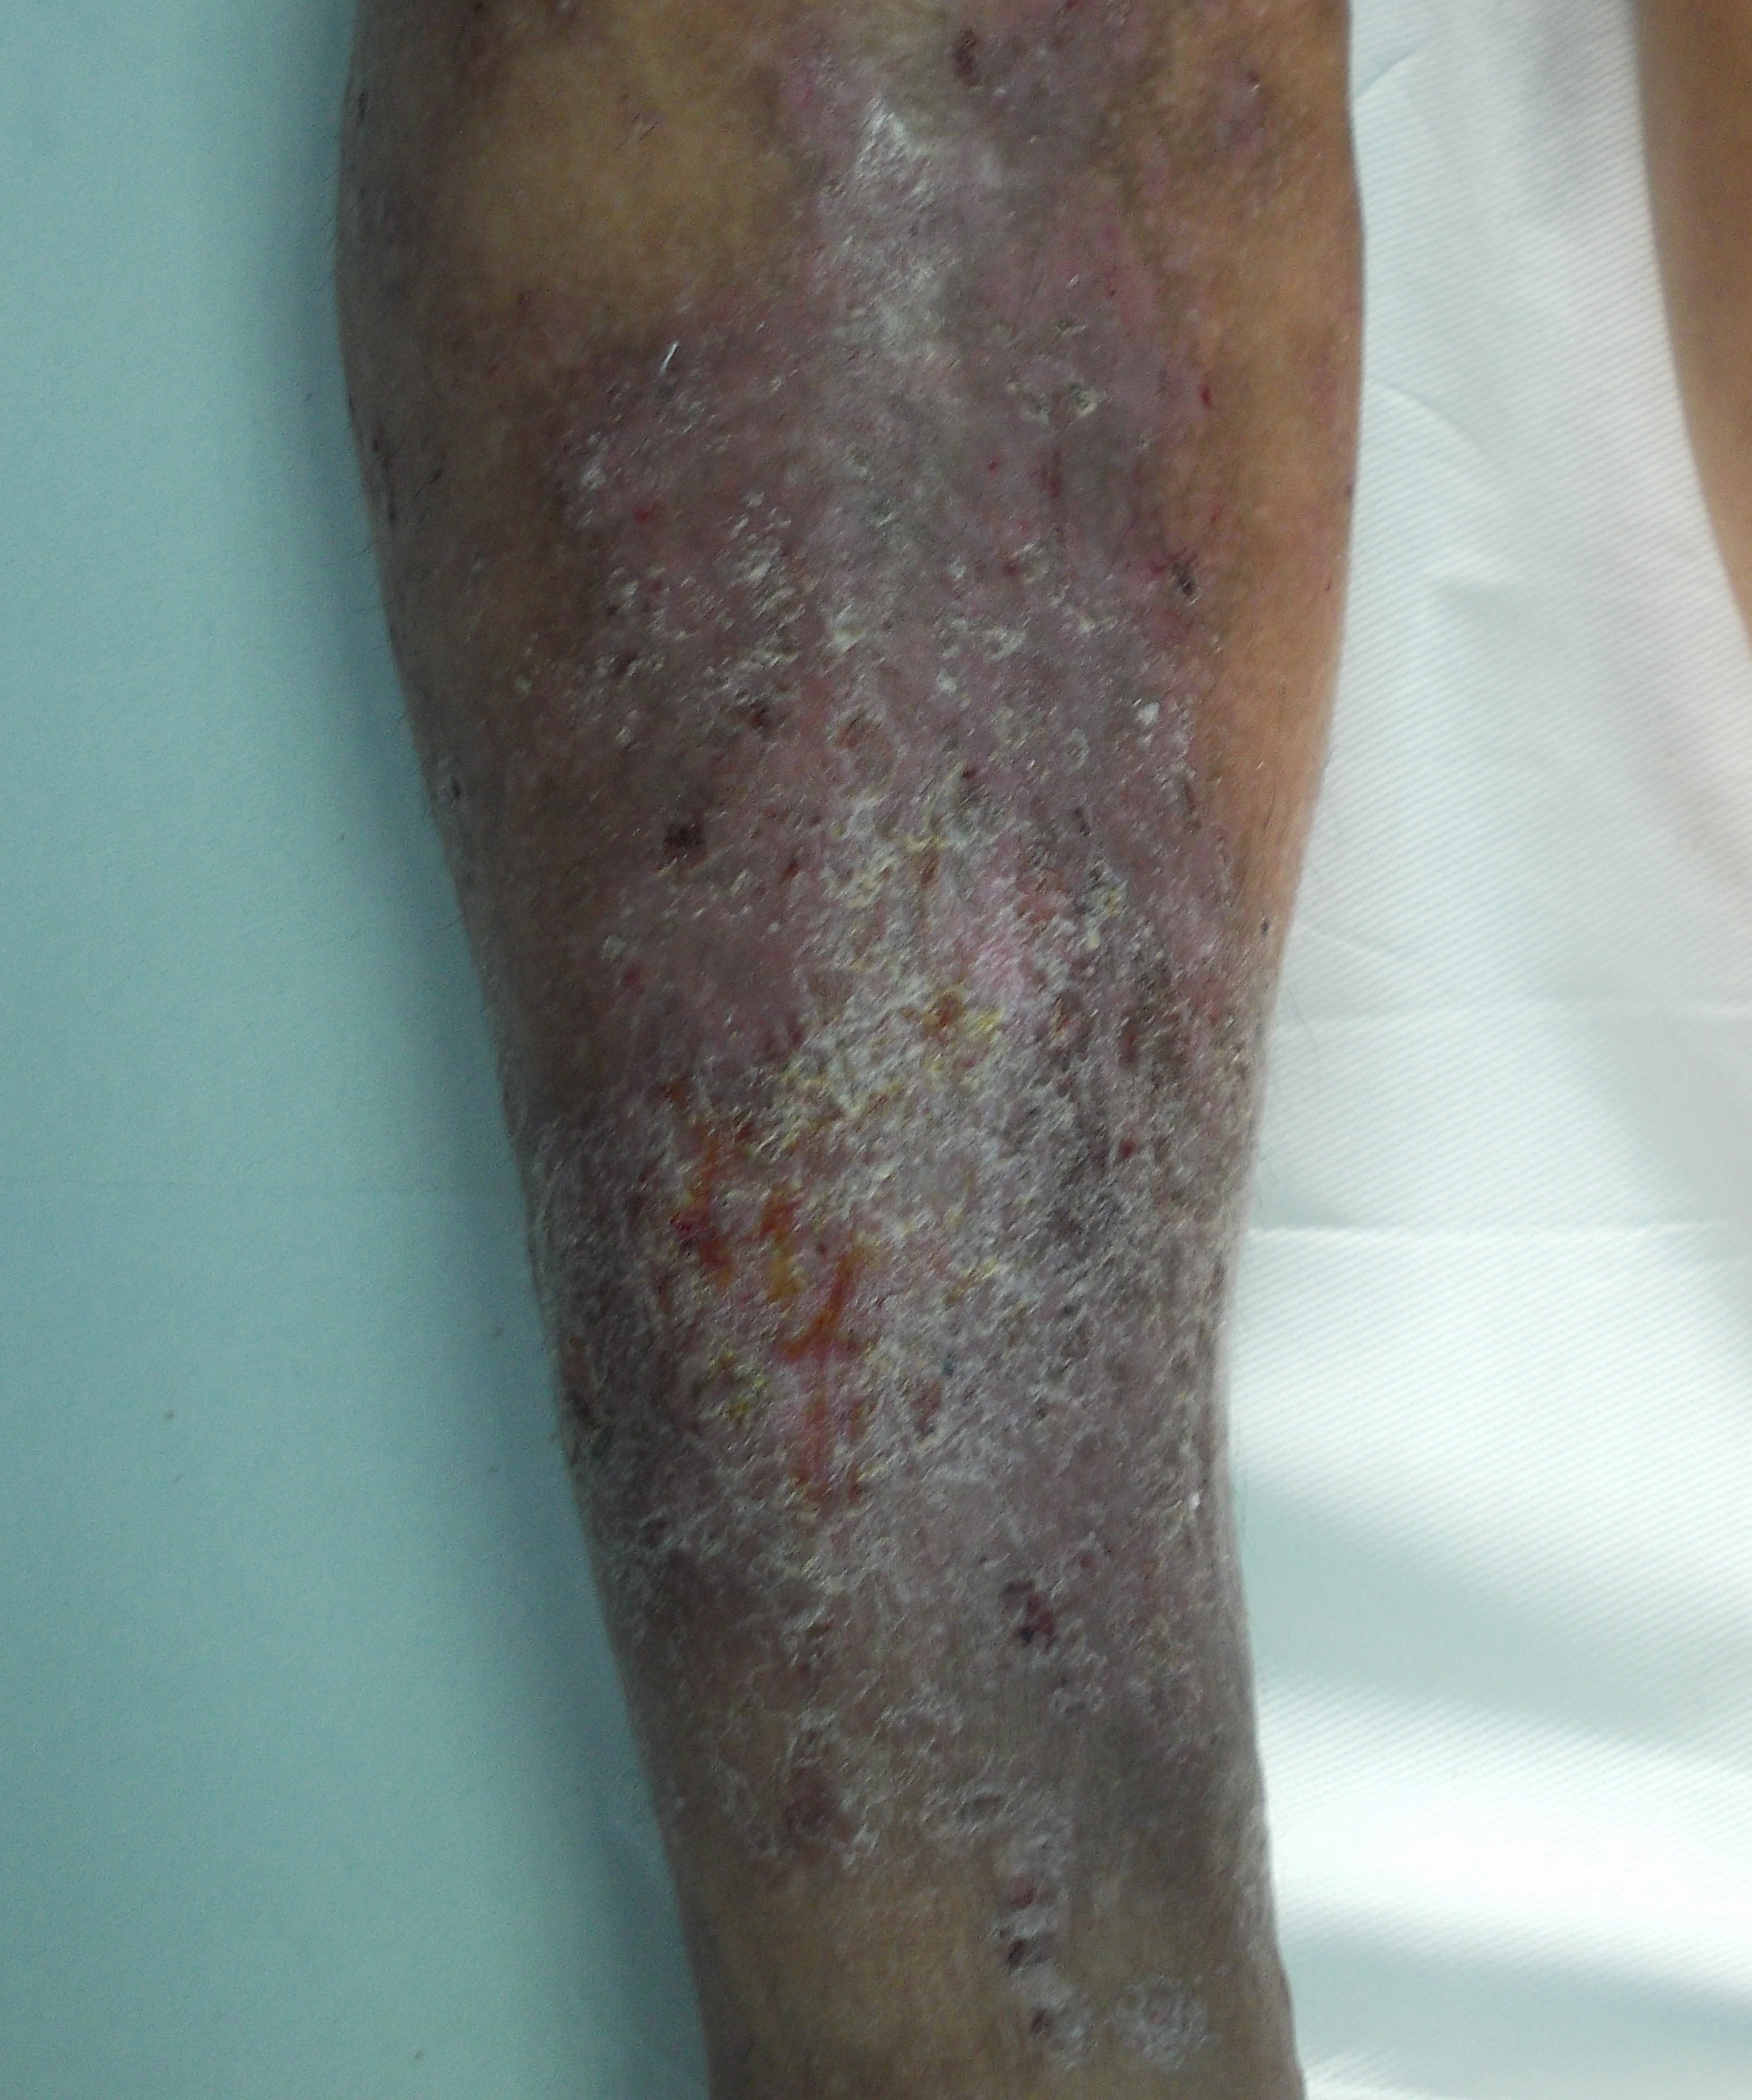 Vene varicoase pe picioare simptome și tratament la domiciliu - Tratamentul simptomelor varicoase